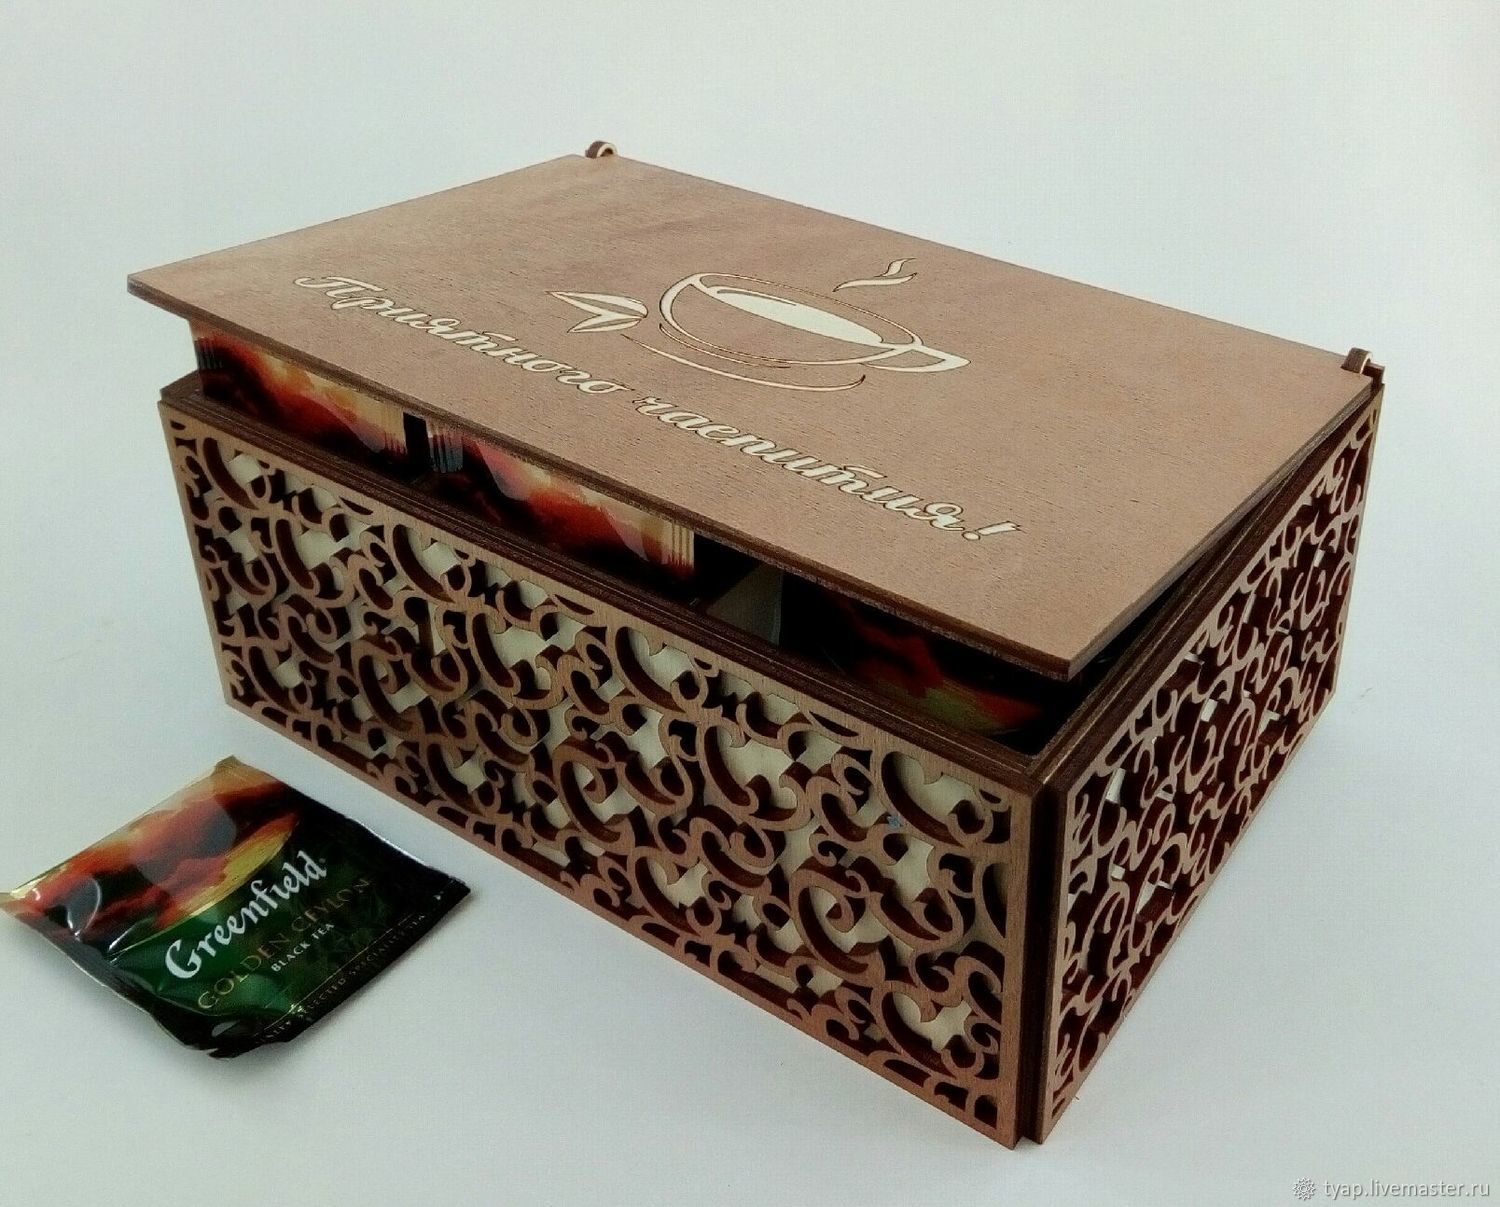 Чай шкатулка купить. Деревянная коробочка для чая. Деревянная коробочка для чая в пакетиках. Чай в деревянной шкатулке. Короб для чайных пакетиков.